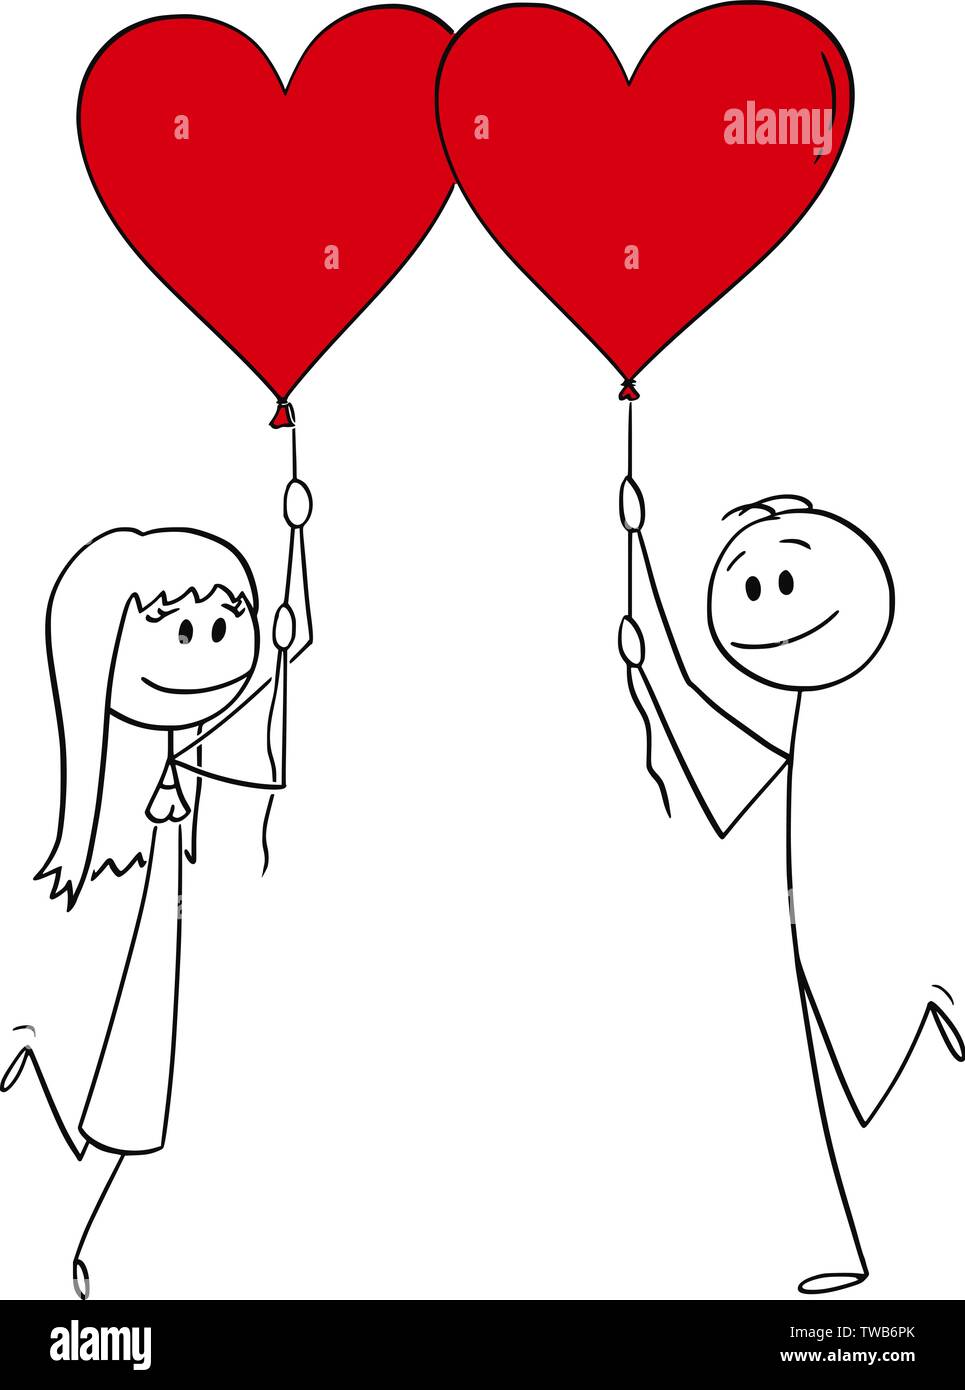 Vector cartoon stick figure dessin illustration conceptuelle du couple hétérosexuel de l'homme et de la femme à la date holding red heart shaped balloons et souriant. Illustration de Vecteur